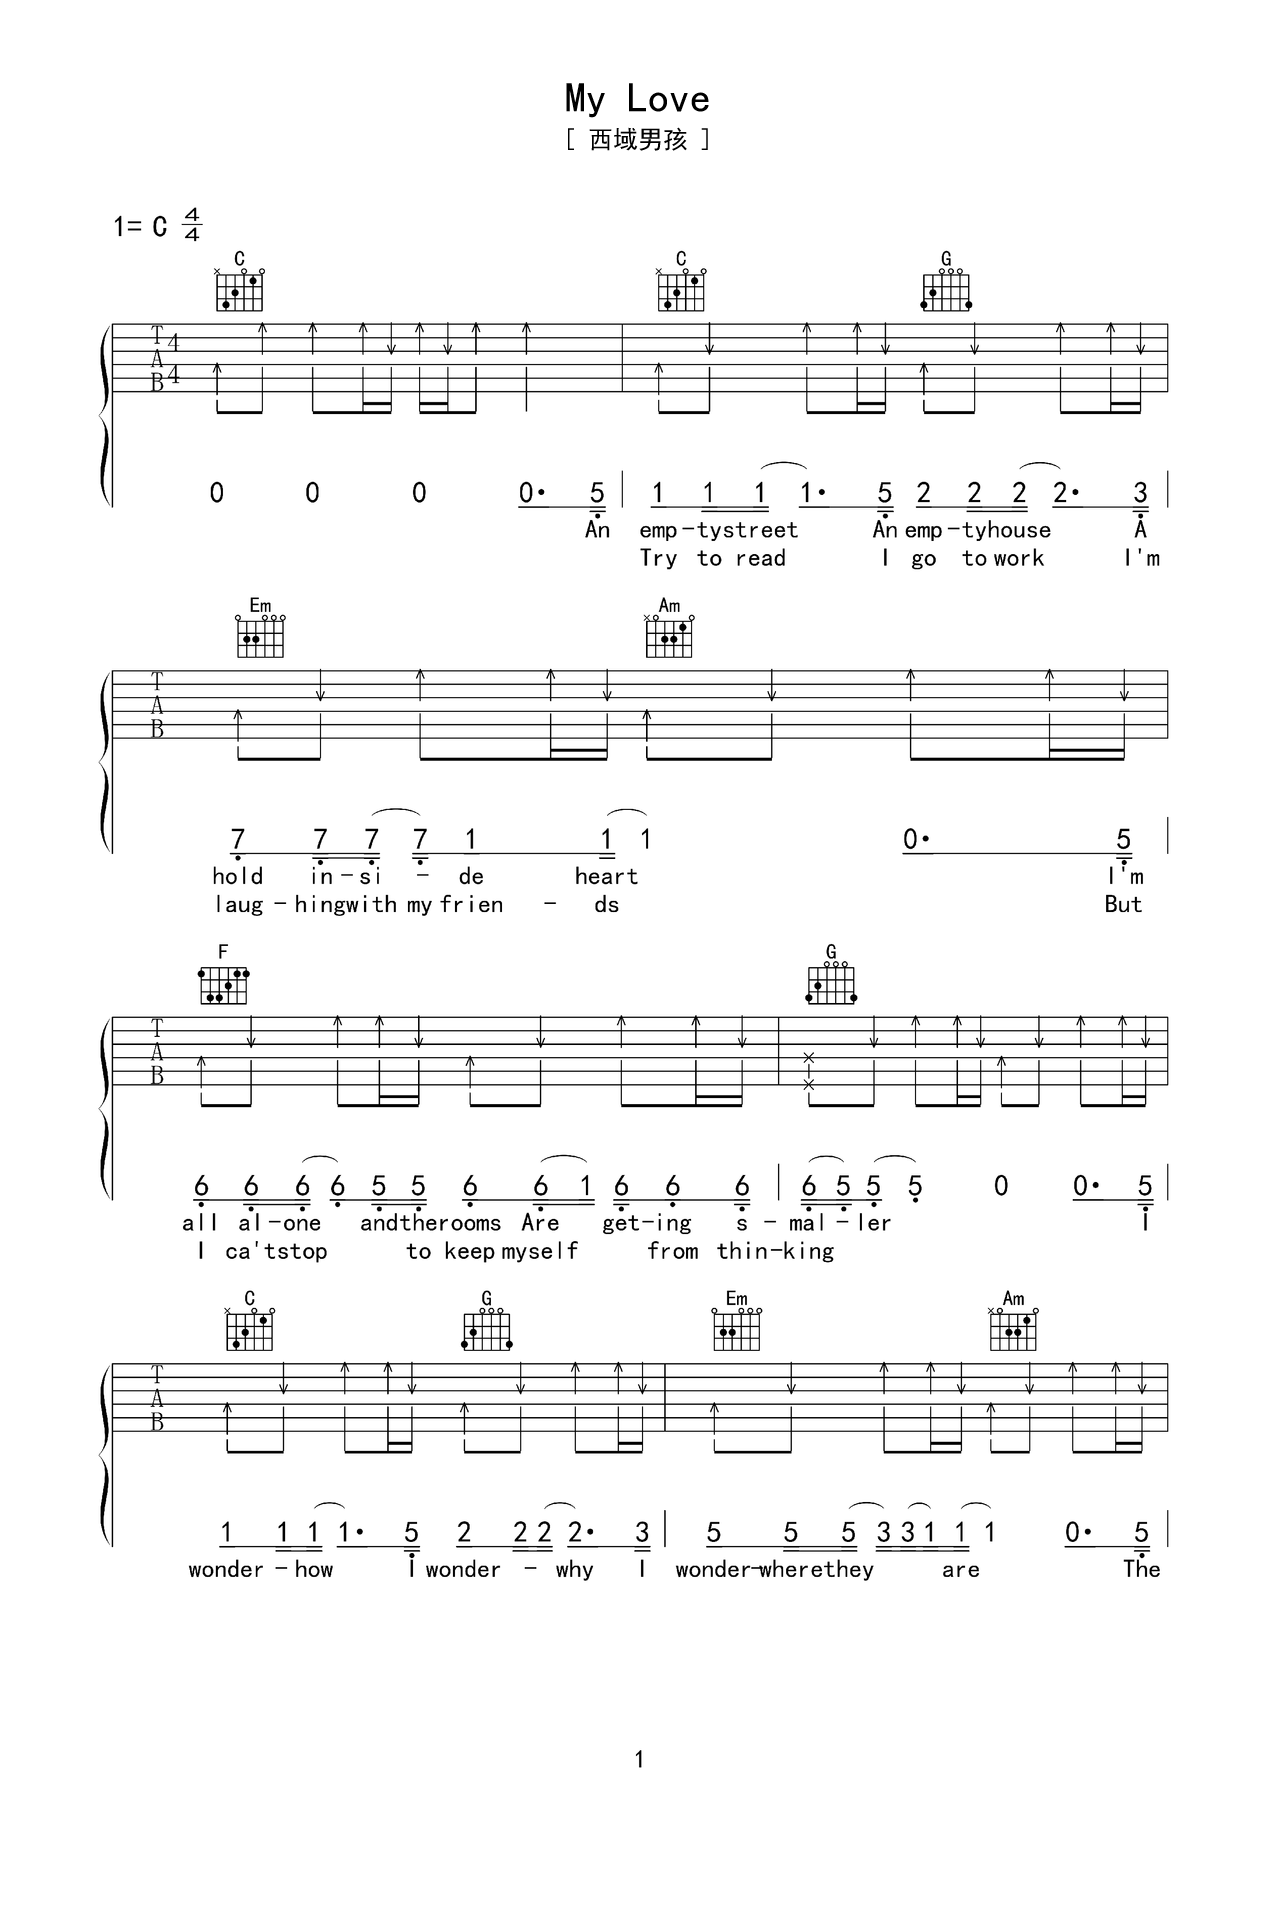 吉他独奏歌曲谱《My Love David Krevger曲》六线谱-吉他曲谱 - 乐器学习网